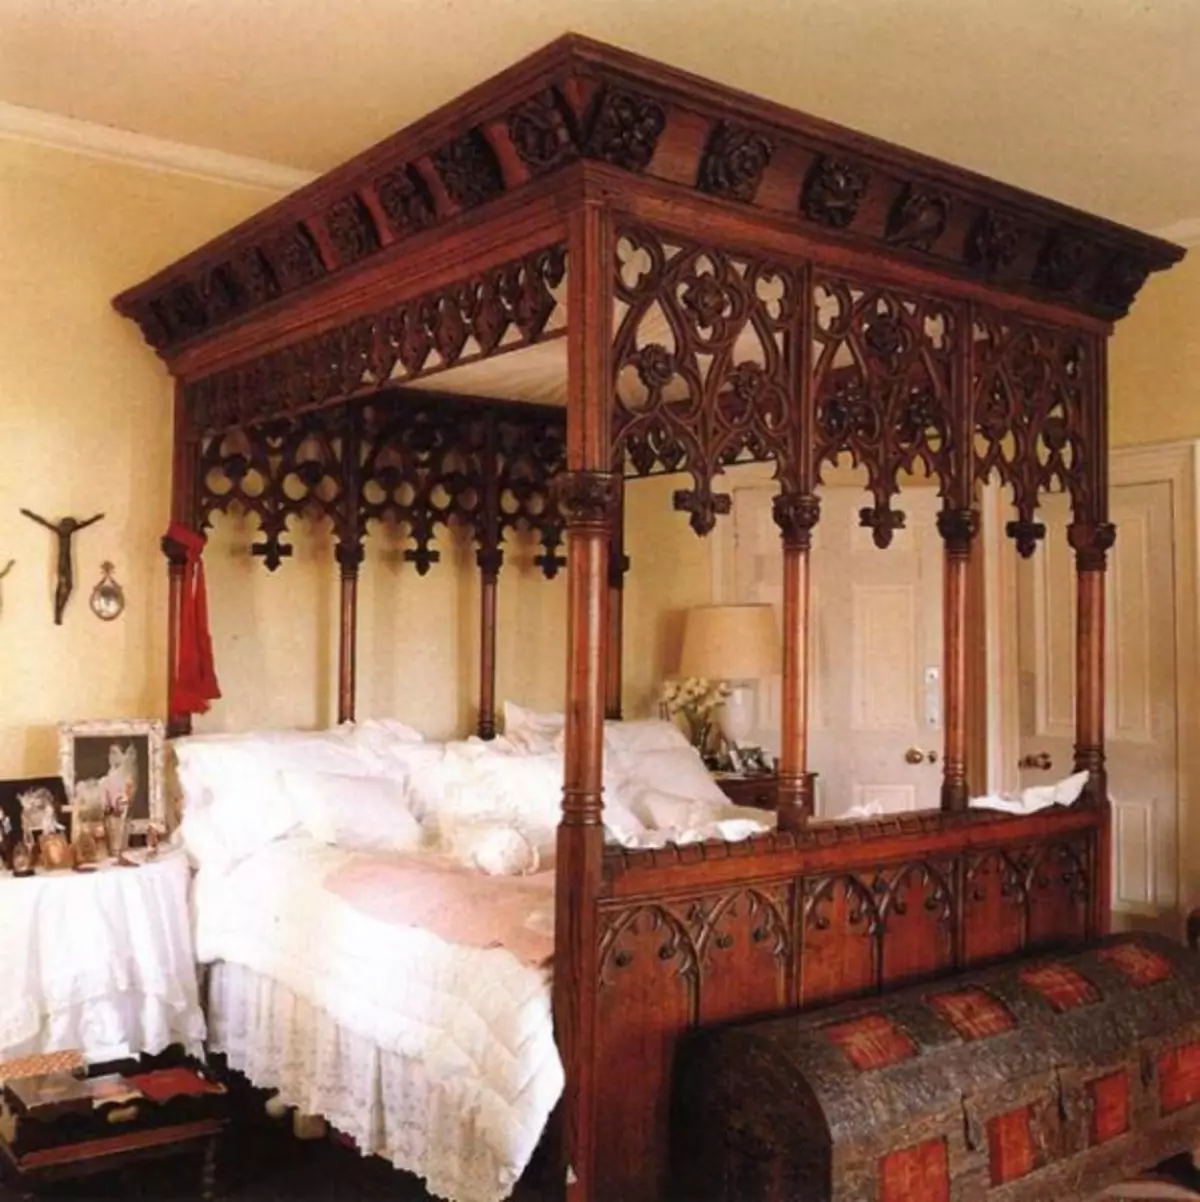 غرفة نوم في الطراز القوطي: العناصر الرئيسية، توصيات التسجيل